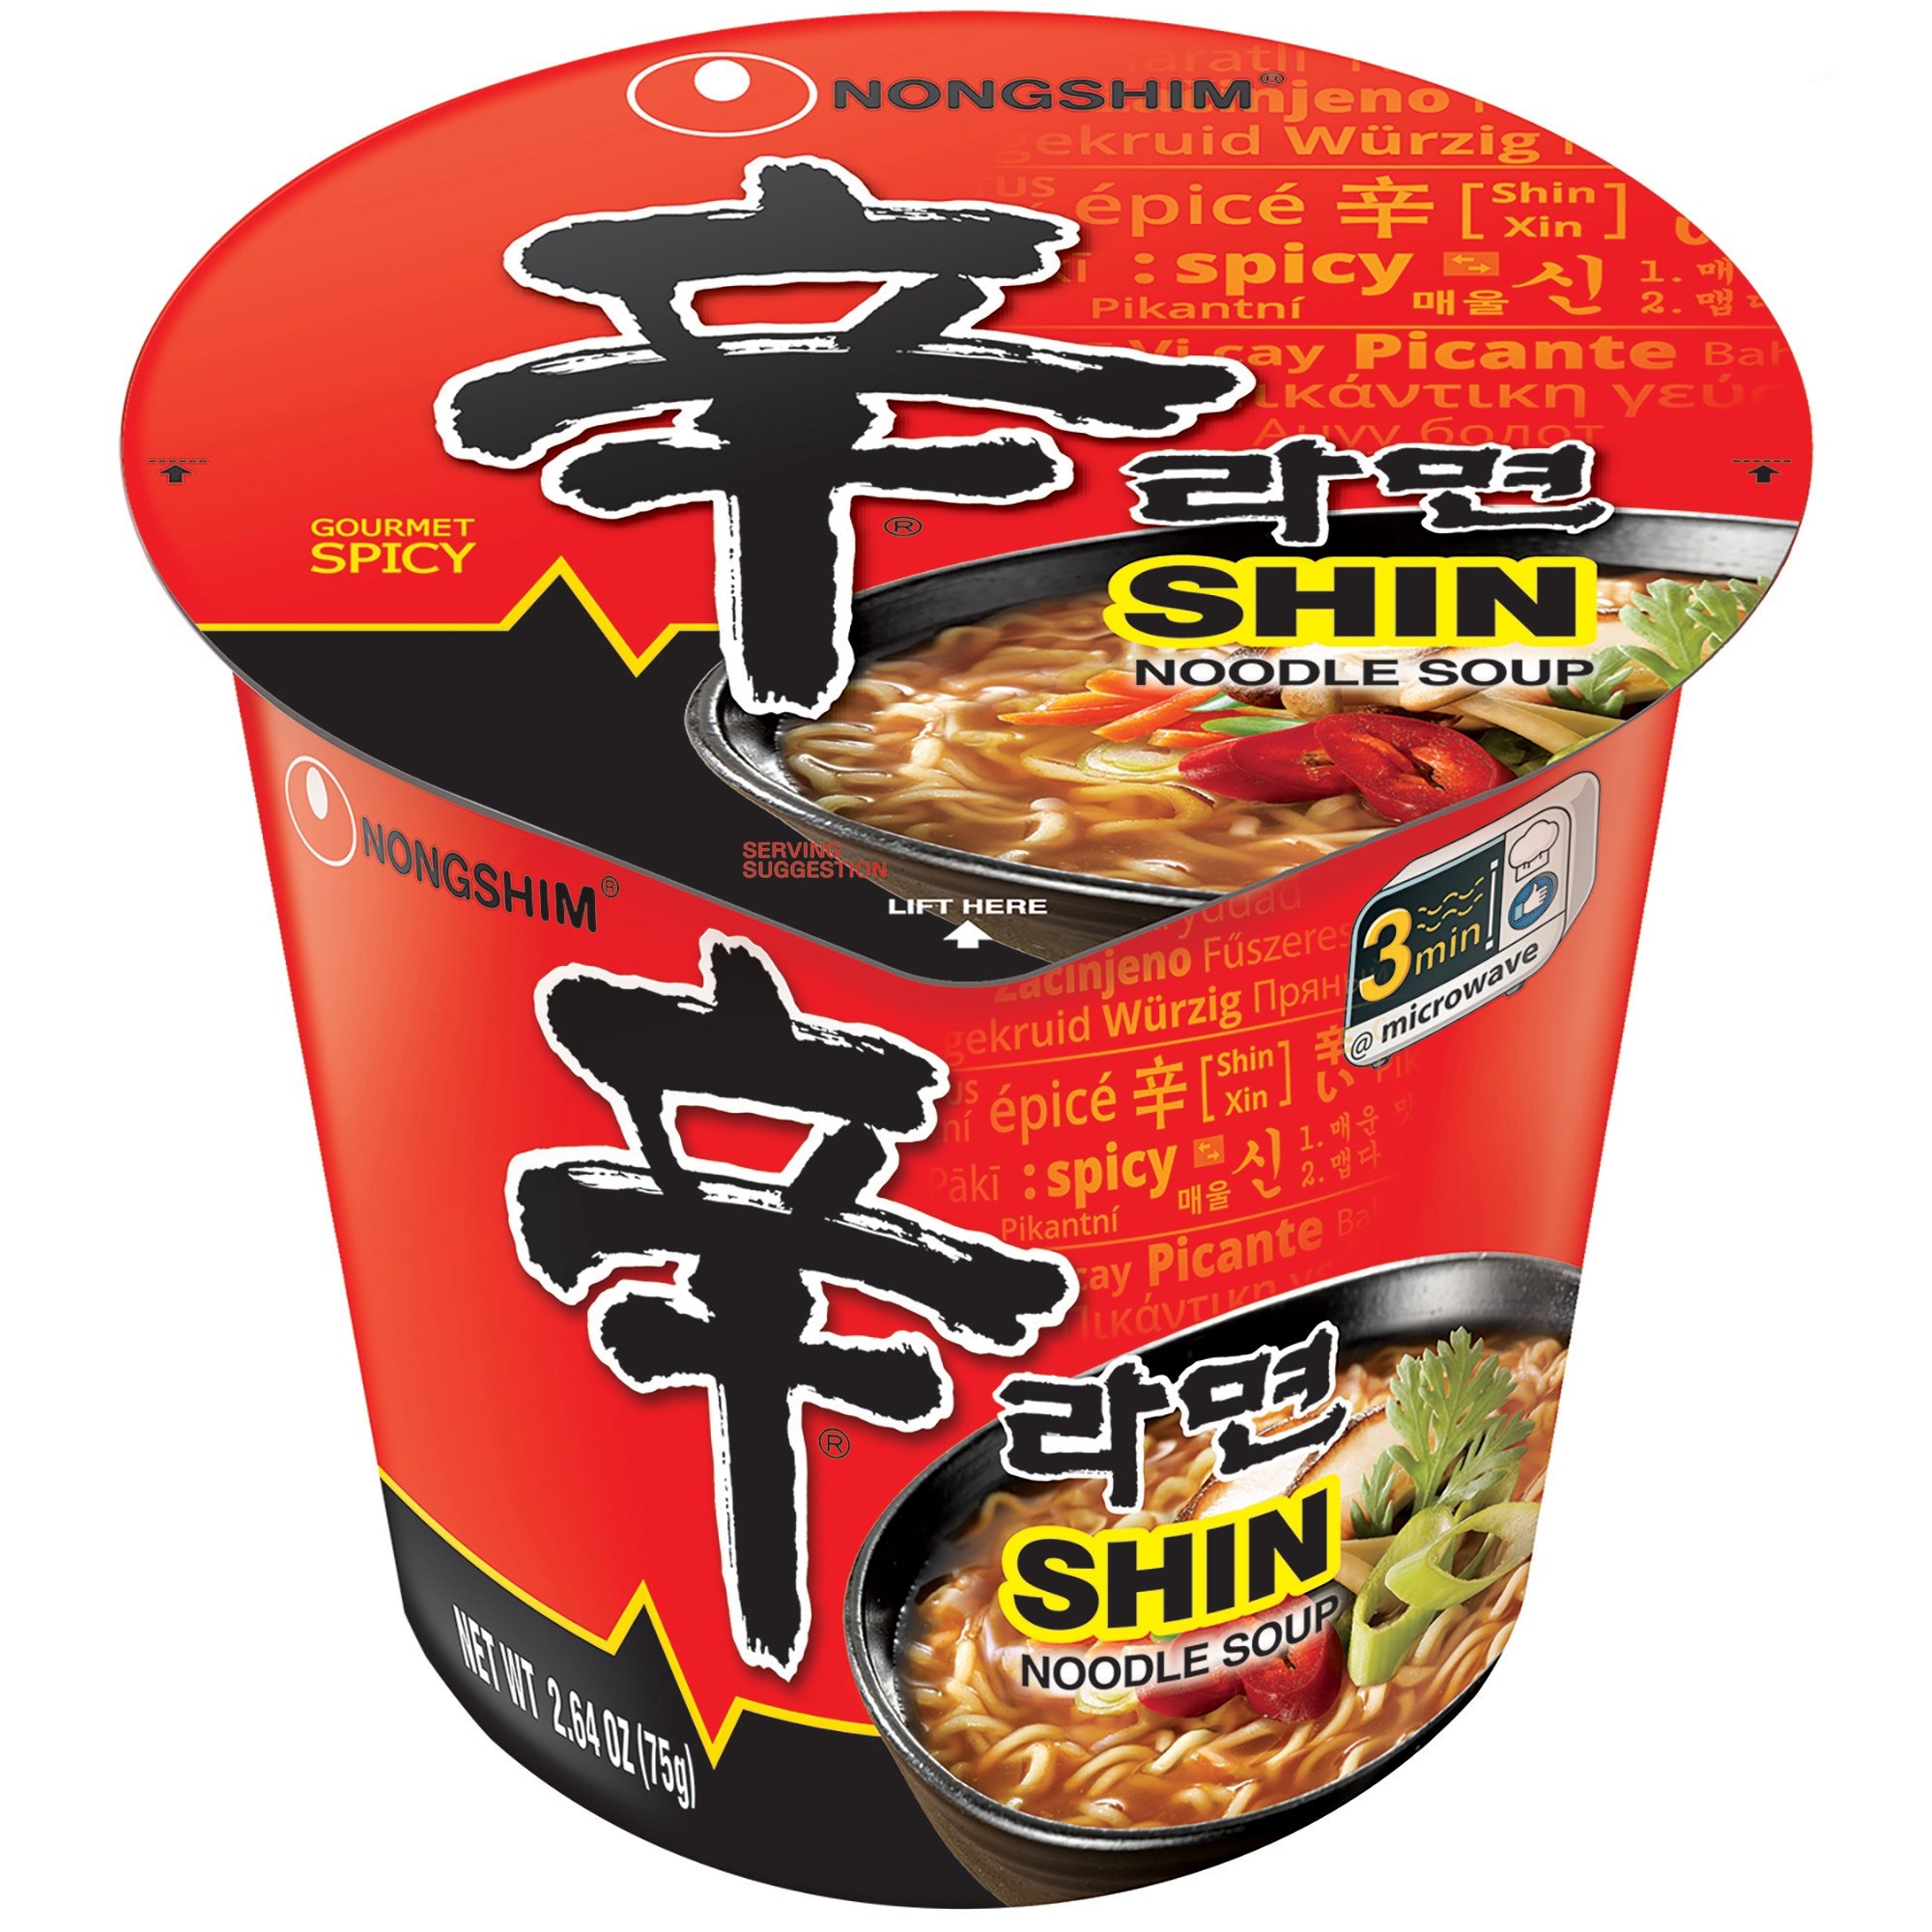 Nongshim Spicy Shin Cup Noodle Soup - Shop Soups & Chili at H-E-B